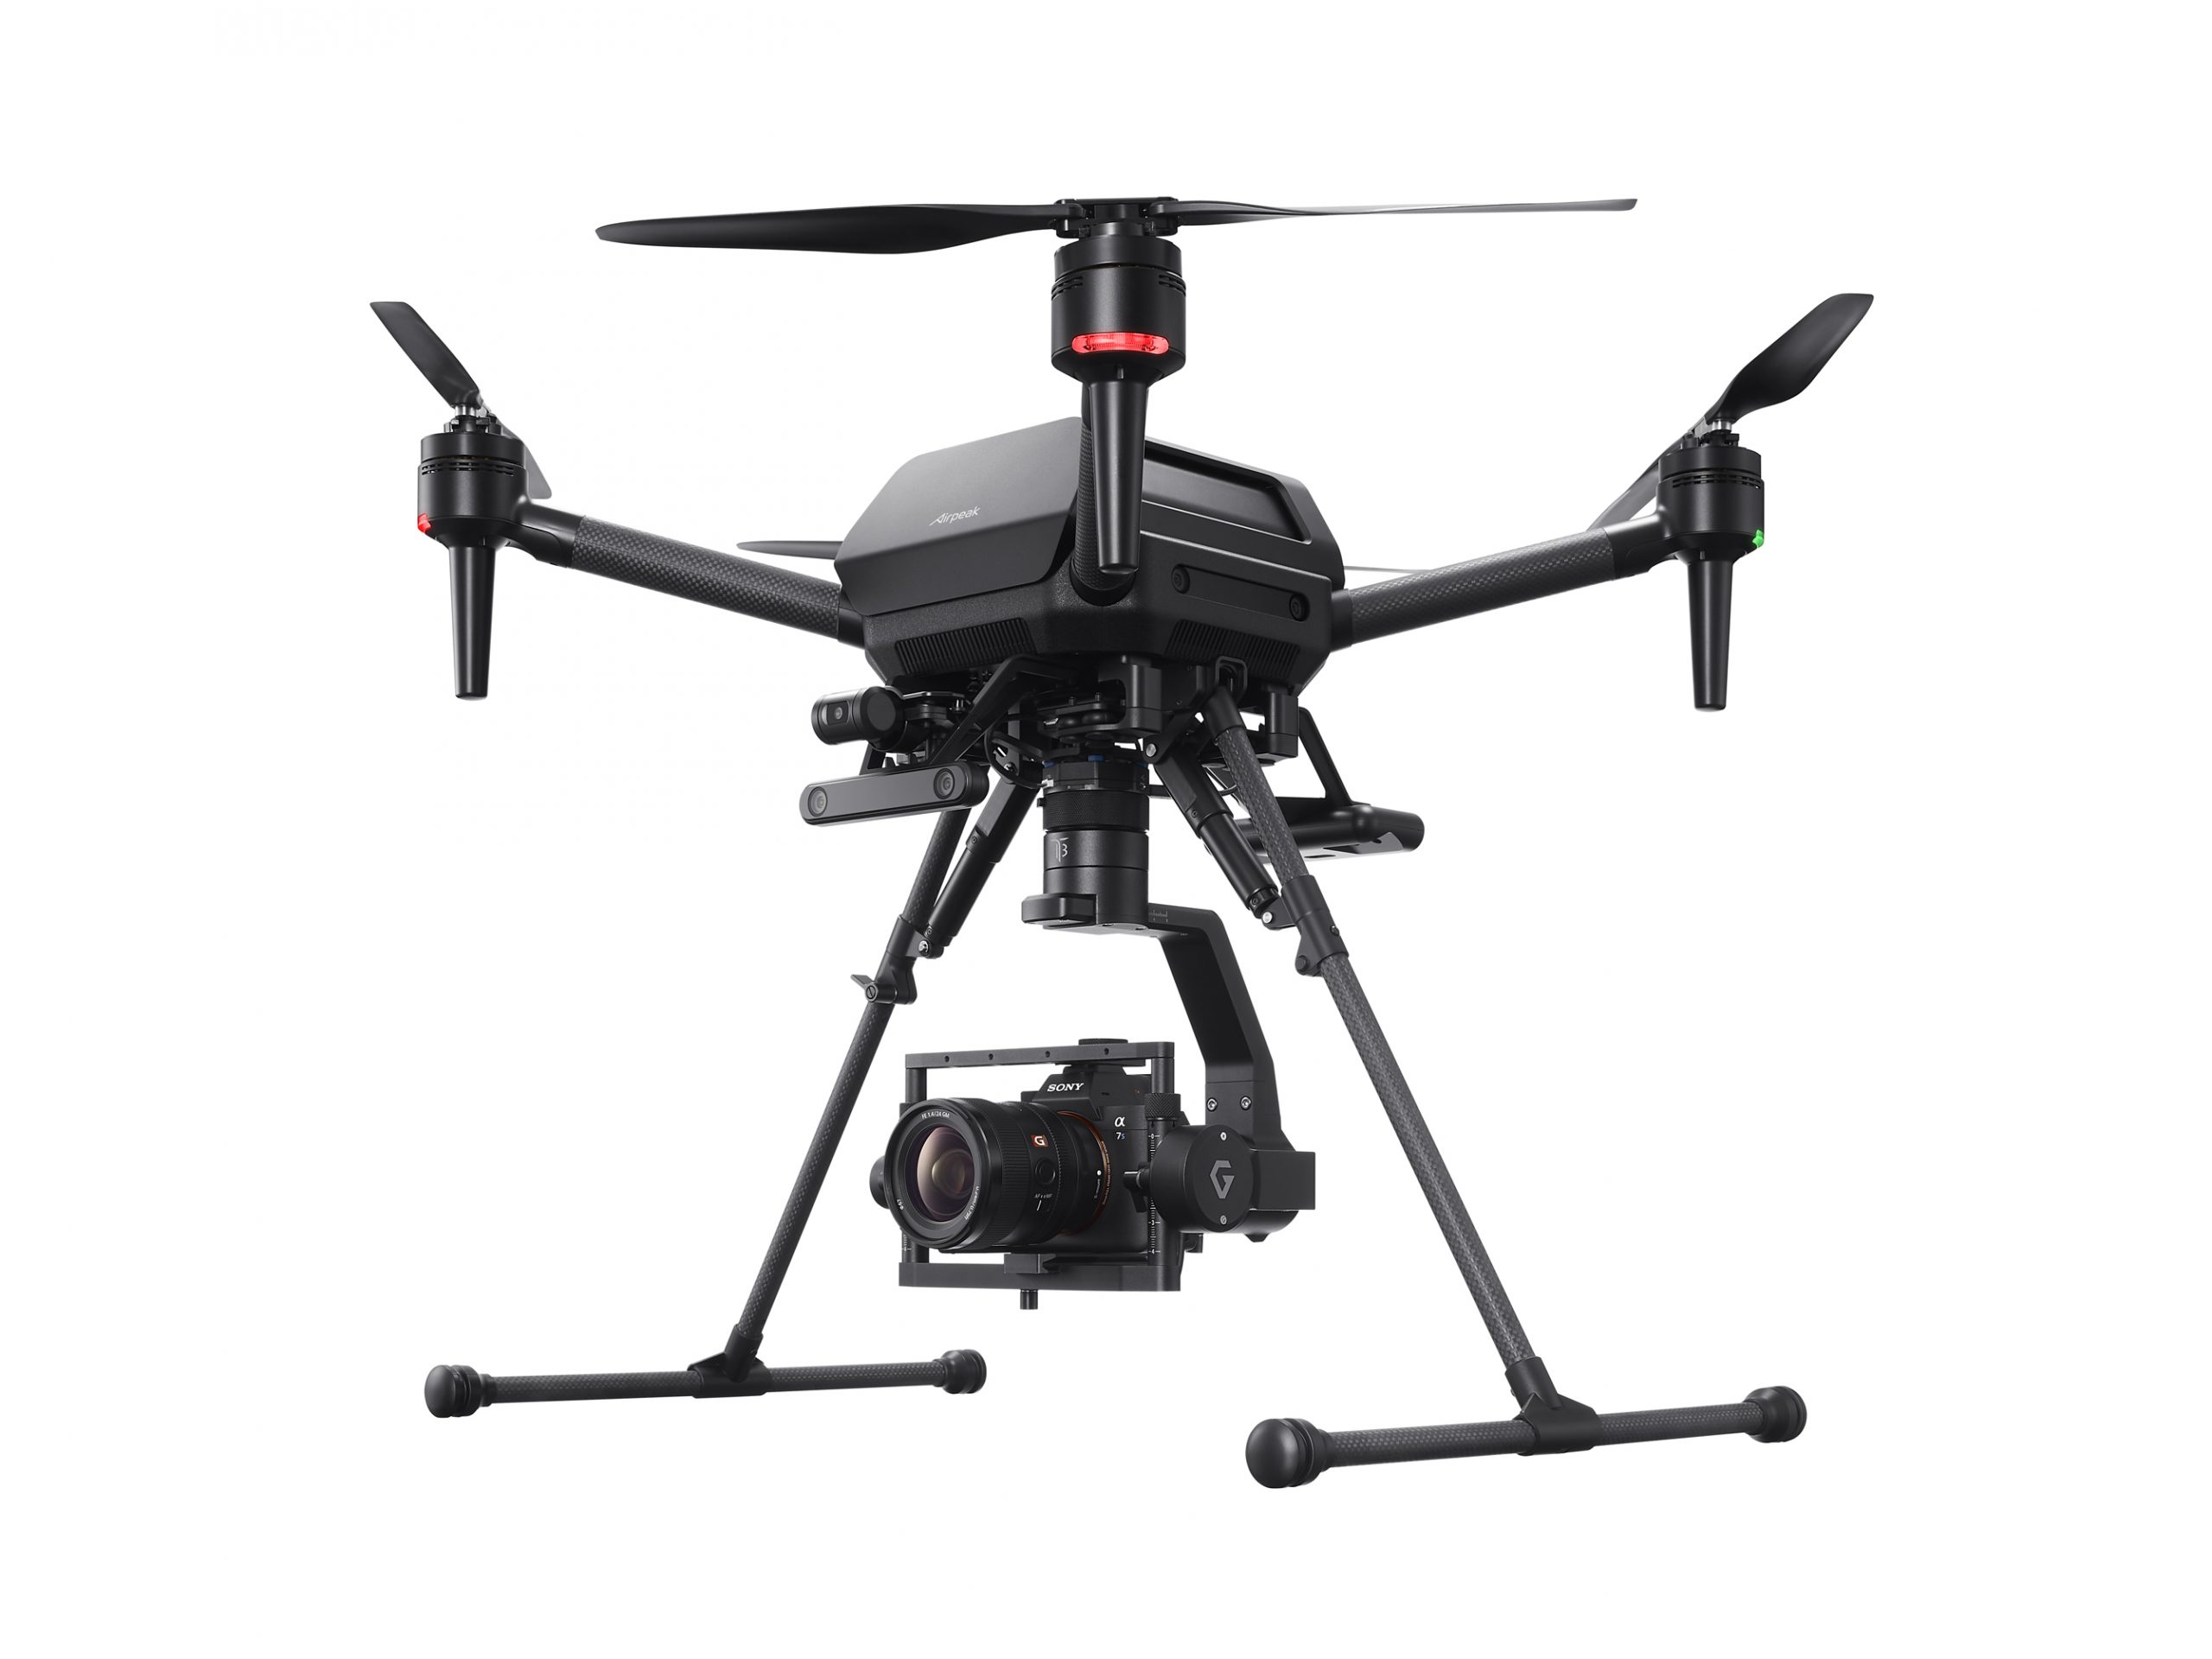 Sony ra mắt Airpeak S1, chiếc drone chuyên nghiệp của mình với giá 9000 USD